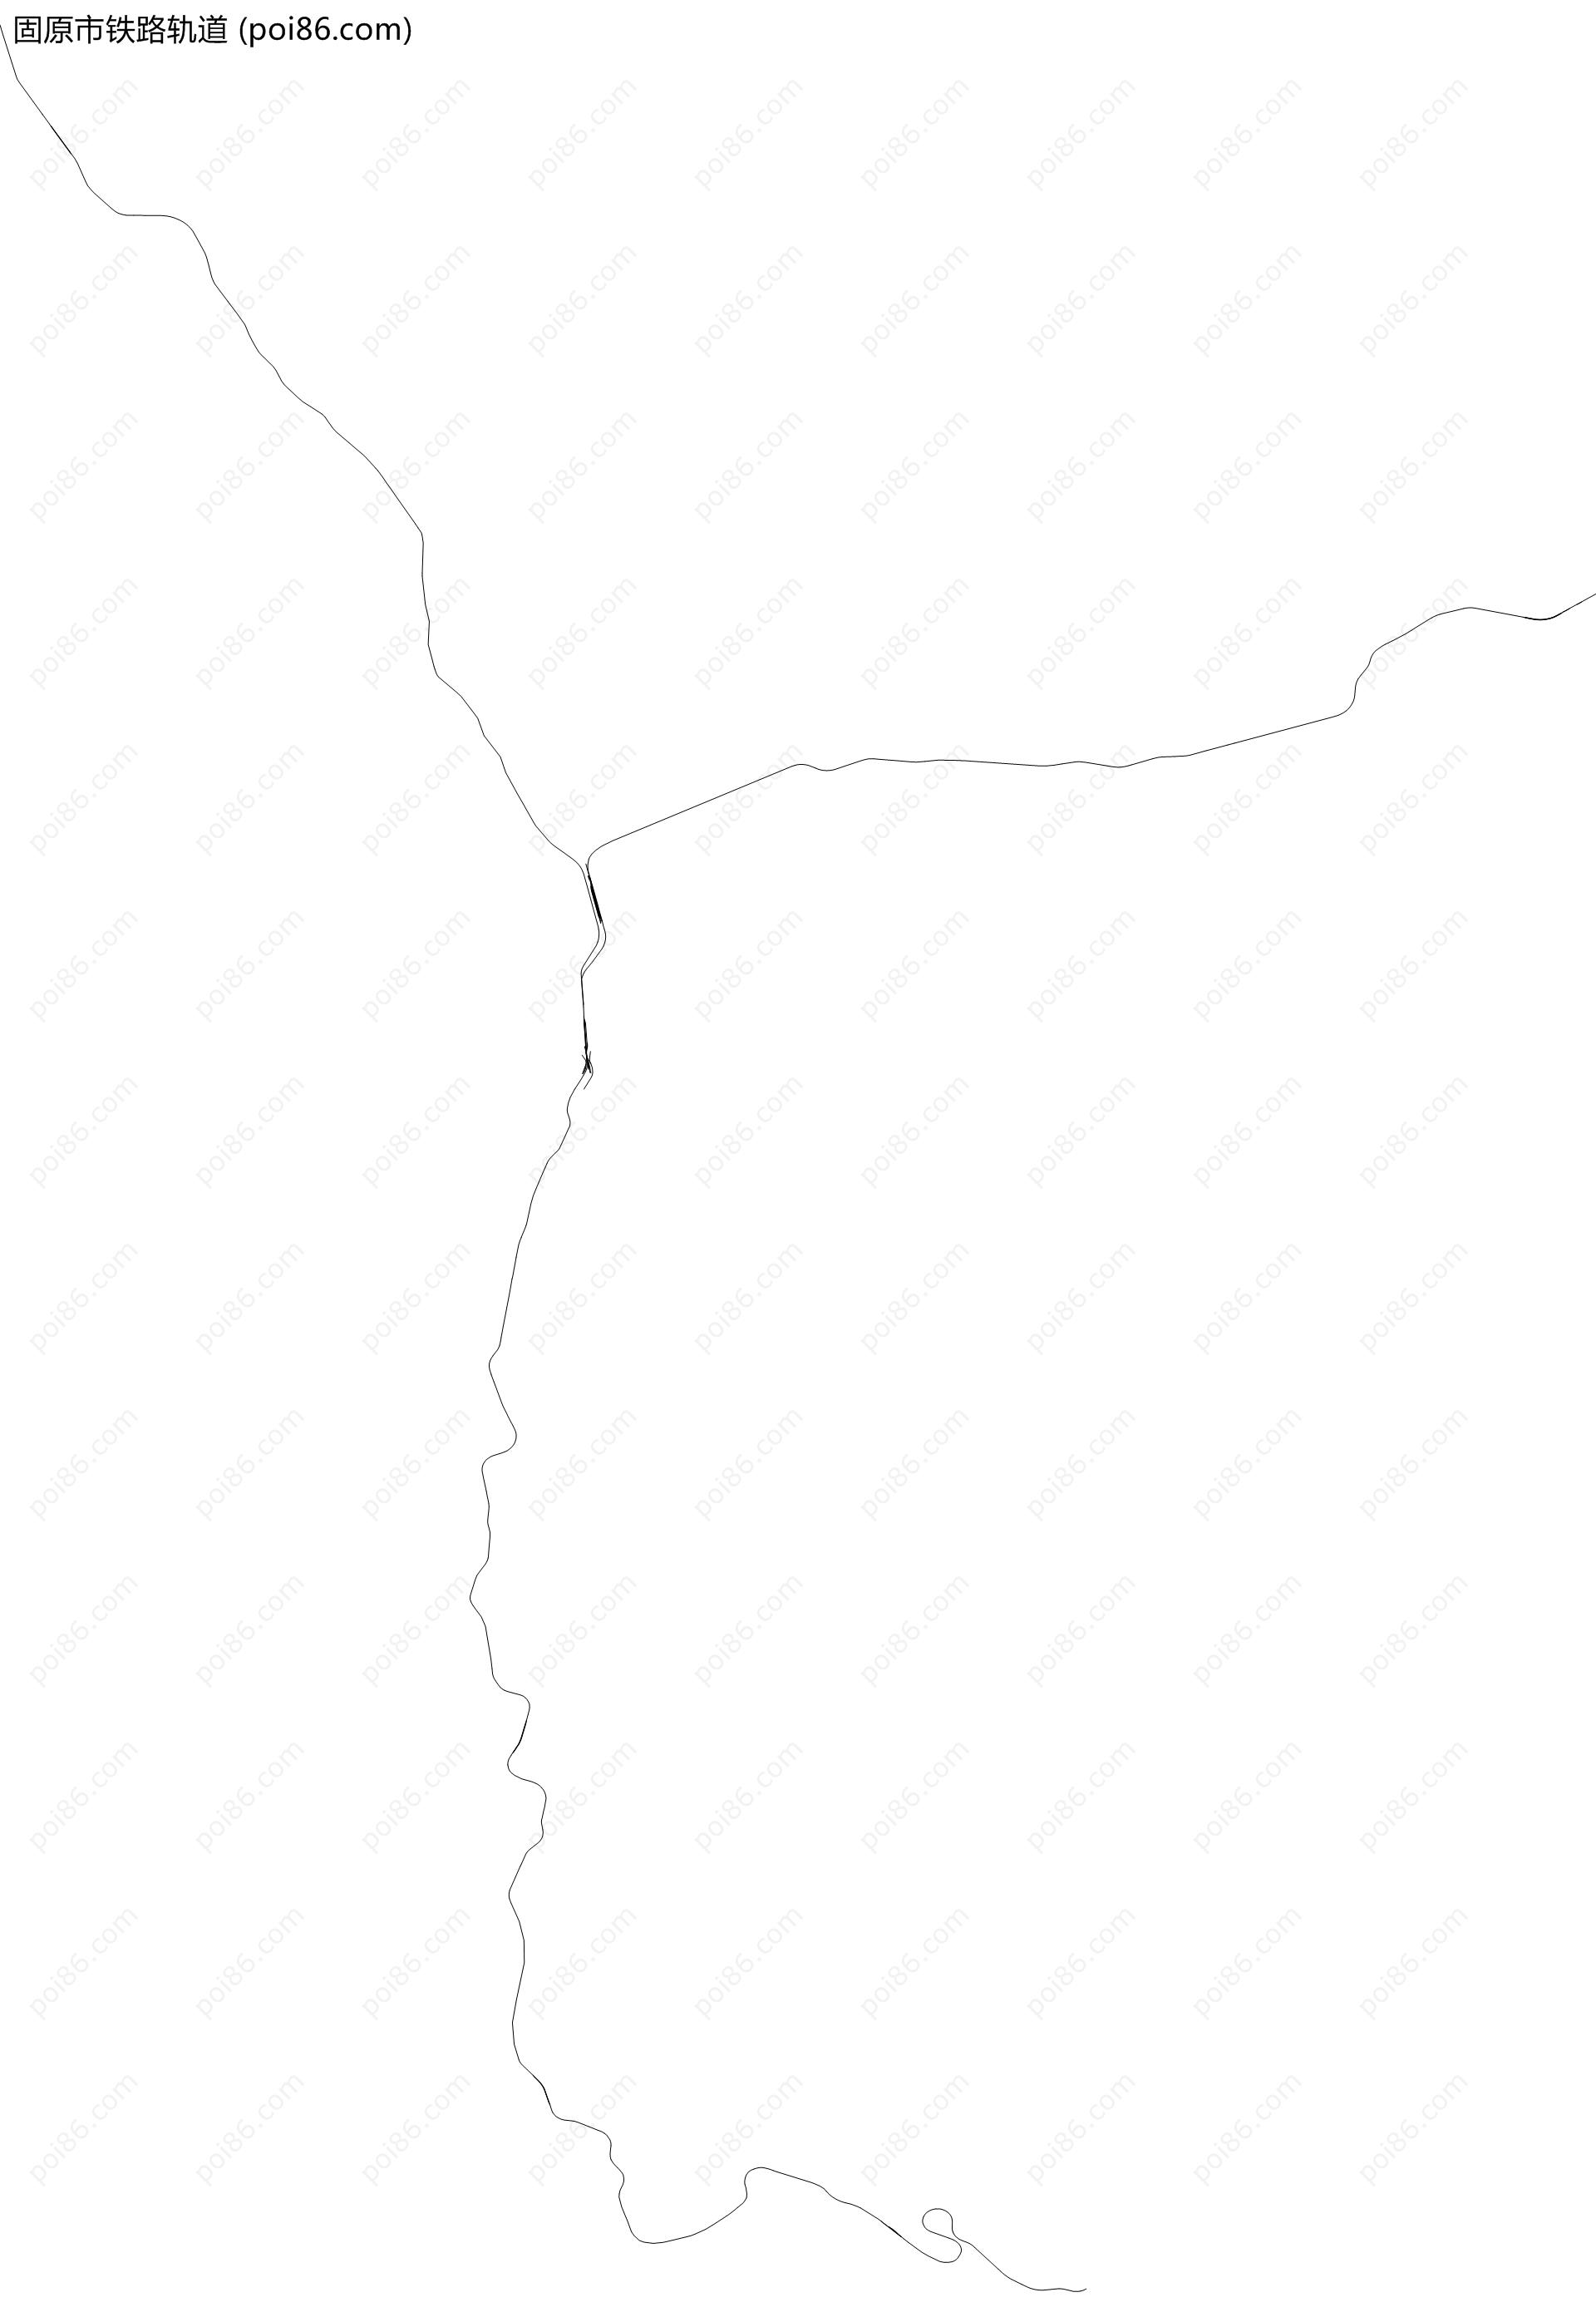 固原市铁路轨道地图